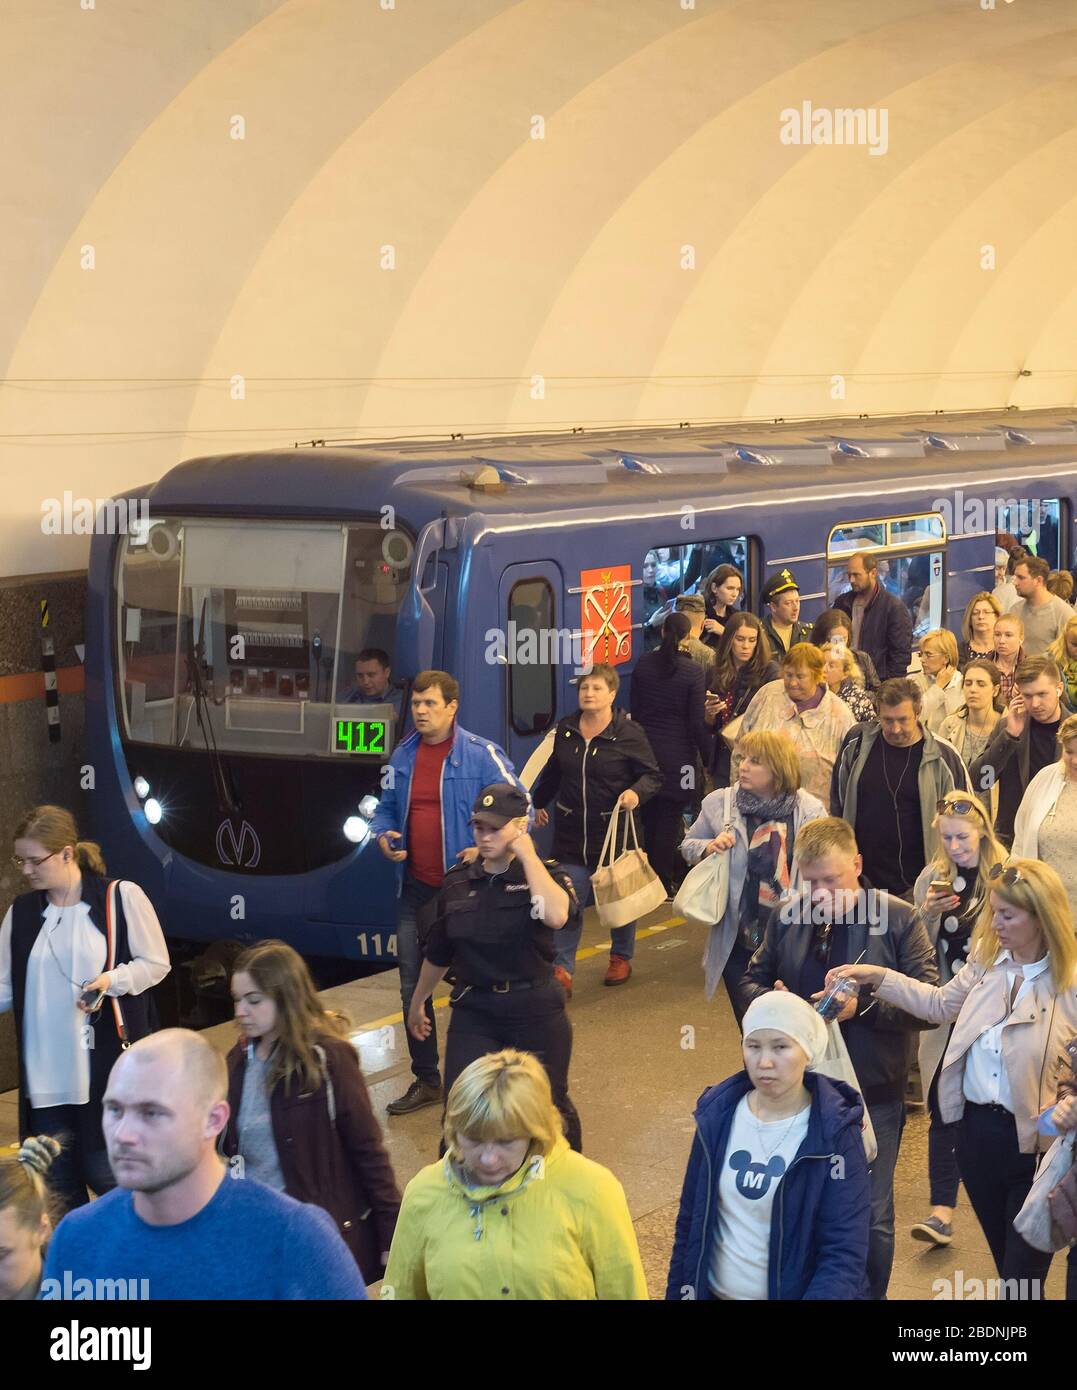 SAINT PETERSBURG, Russie - le 11 juillet 2019 : foule de gens en métro train à la plate-forme de station métropolitaine bolchevik, Saint Petersburg, Russie Banque D'Images